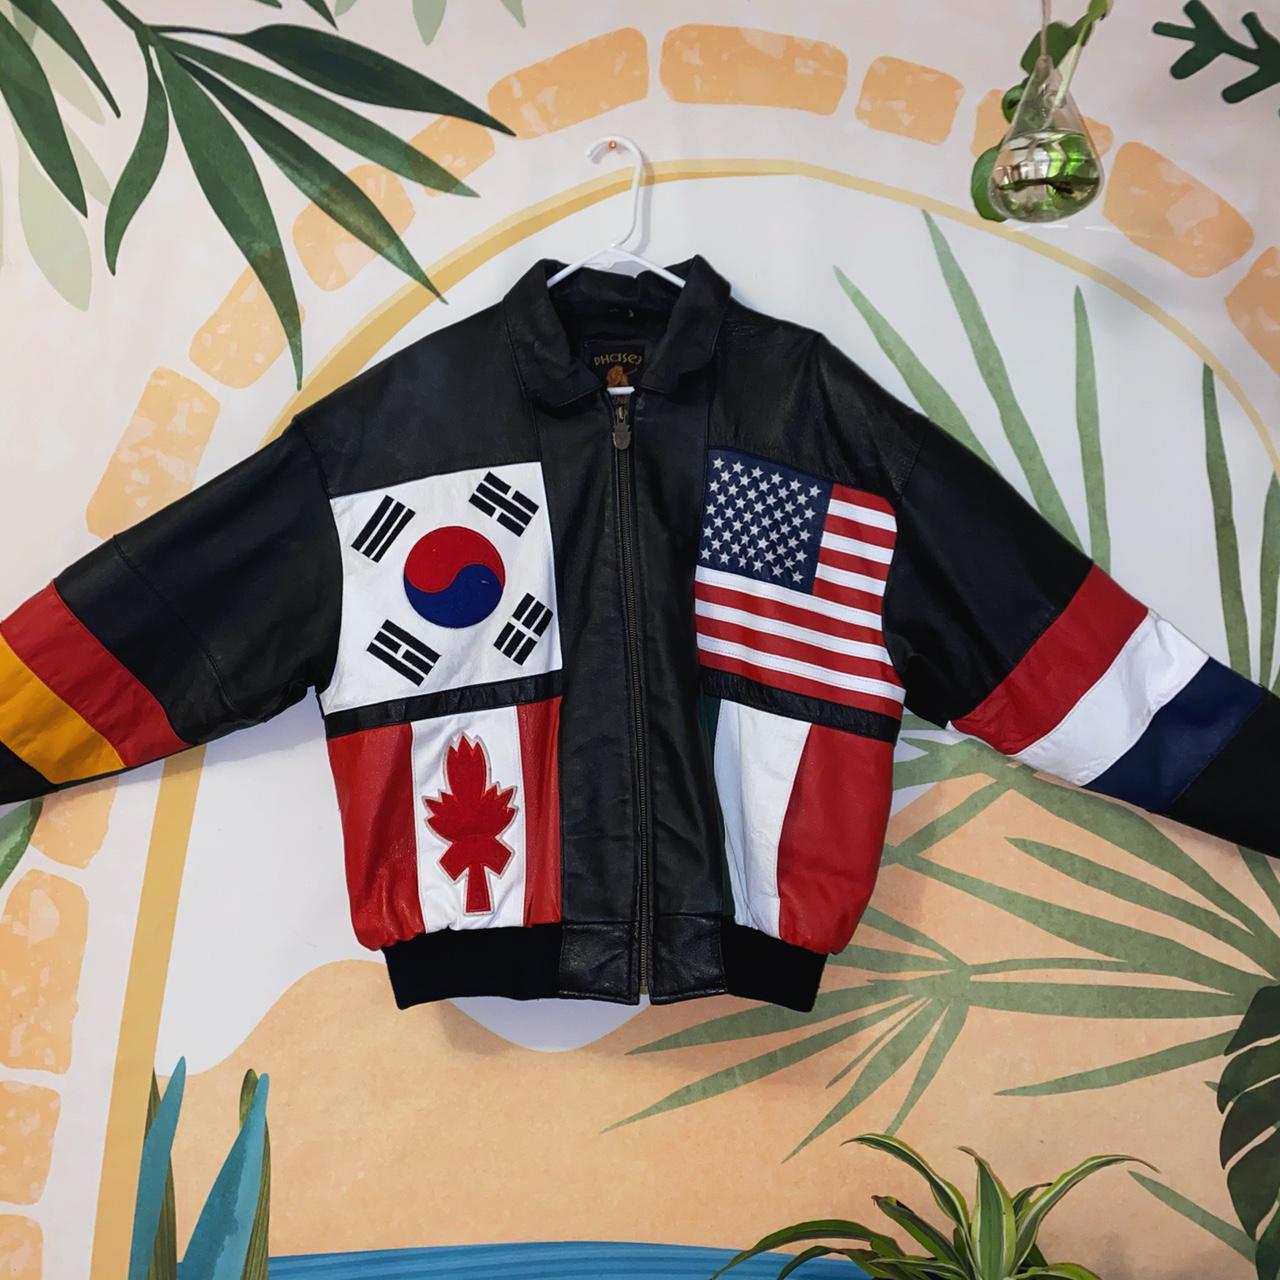 Product Image 2 - Phase 3 Leather Flag Jacket